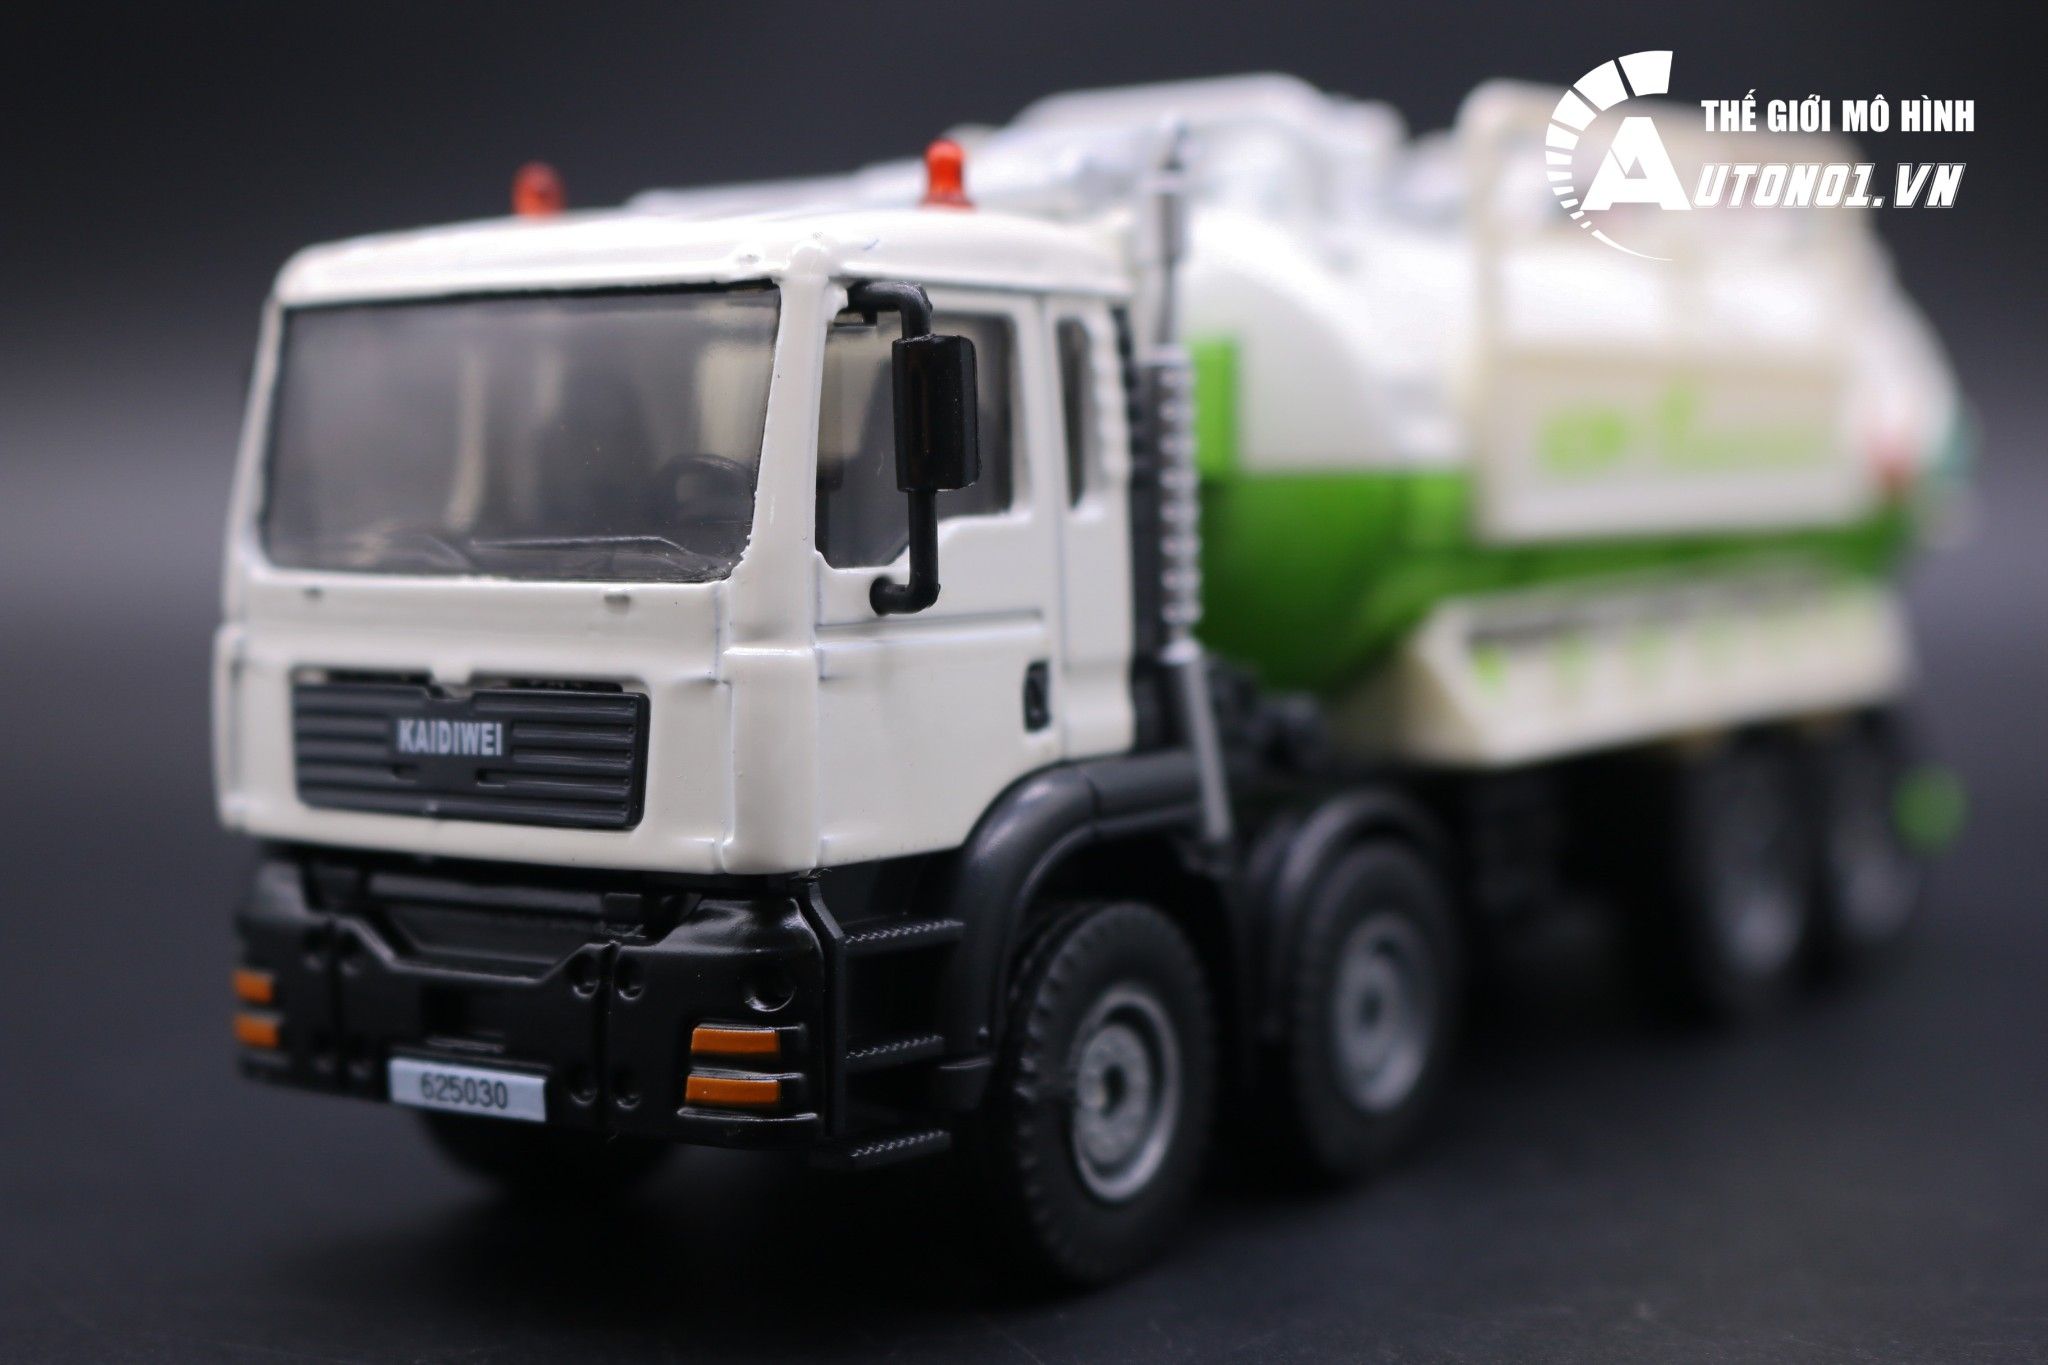  Mô hình xe tải vận chuyển nước thải tái chế green white kaidiwei 1:50 7005 